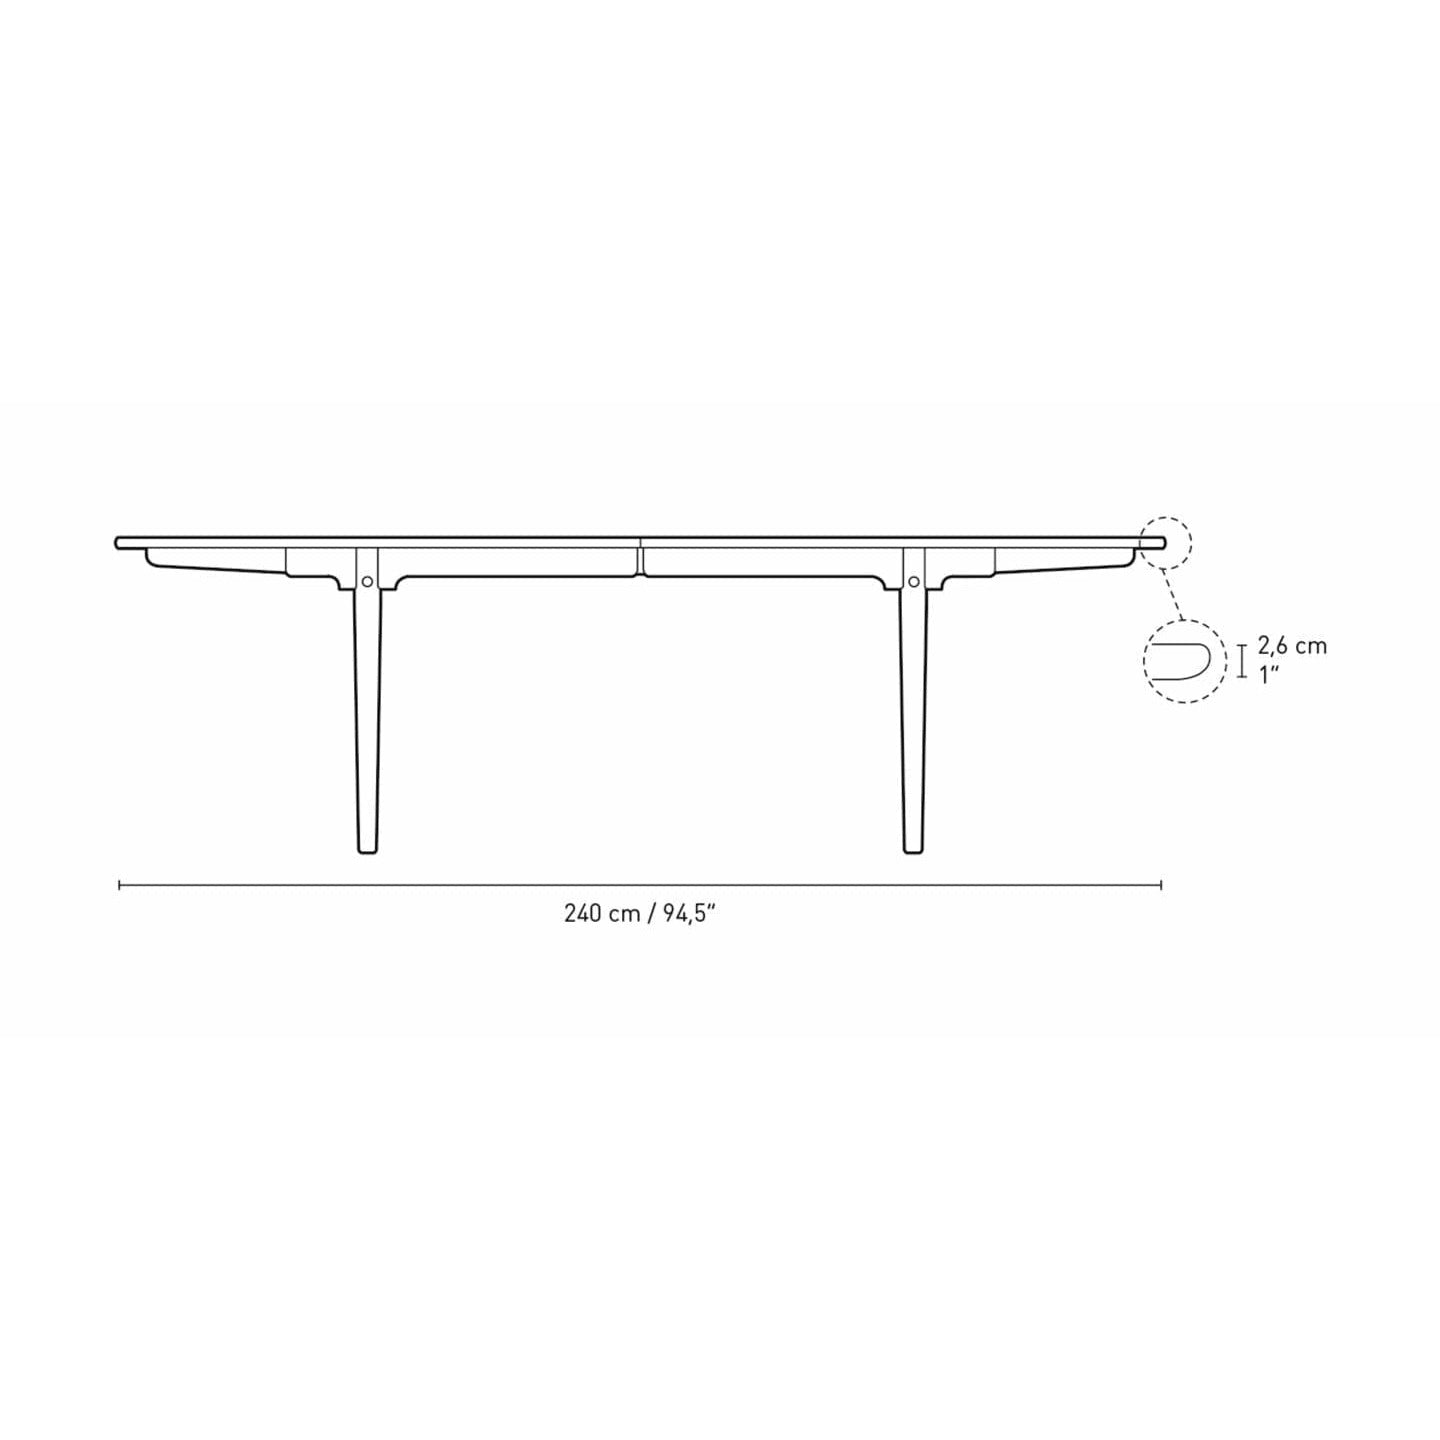 Jídelní stůl Carl Hansen CH339 navržený pro 4 vytahovací desky, dubový kouřový barevný olej